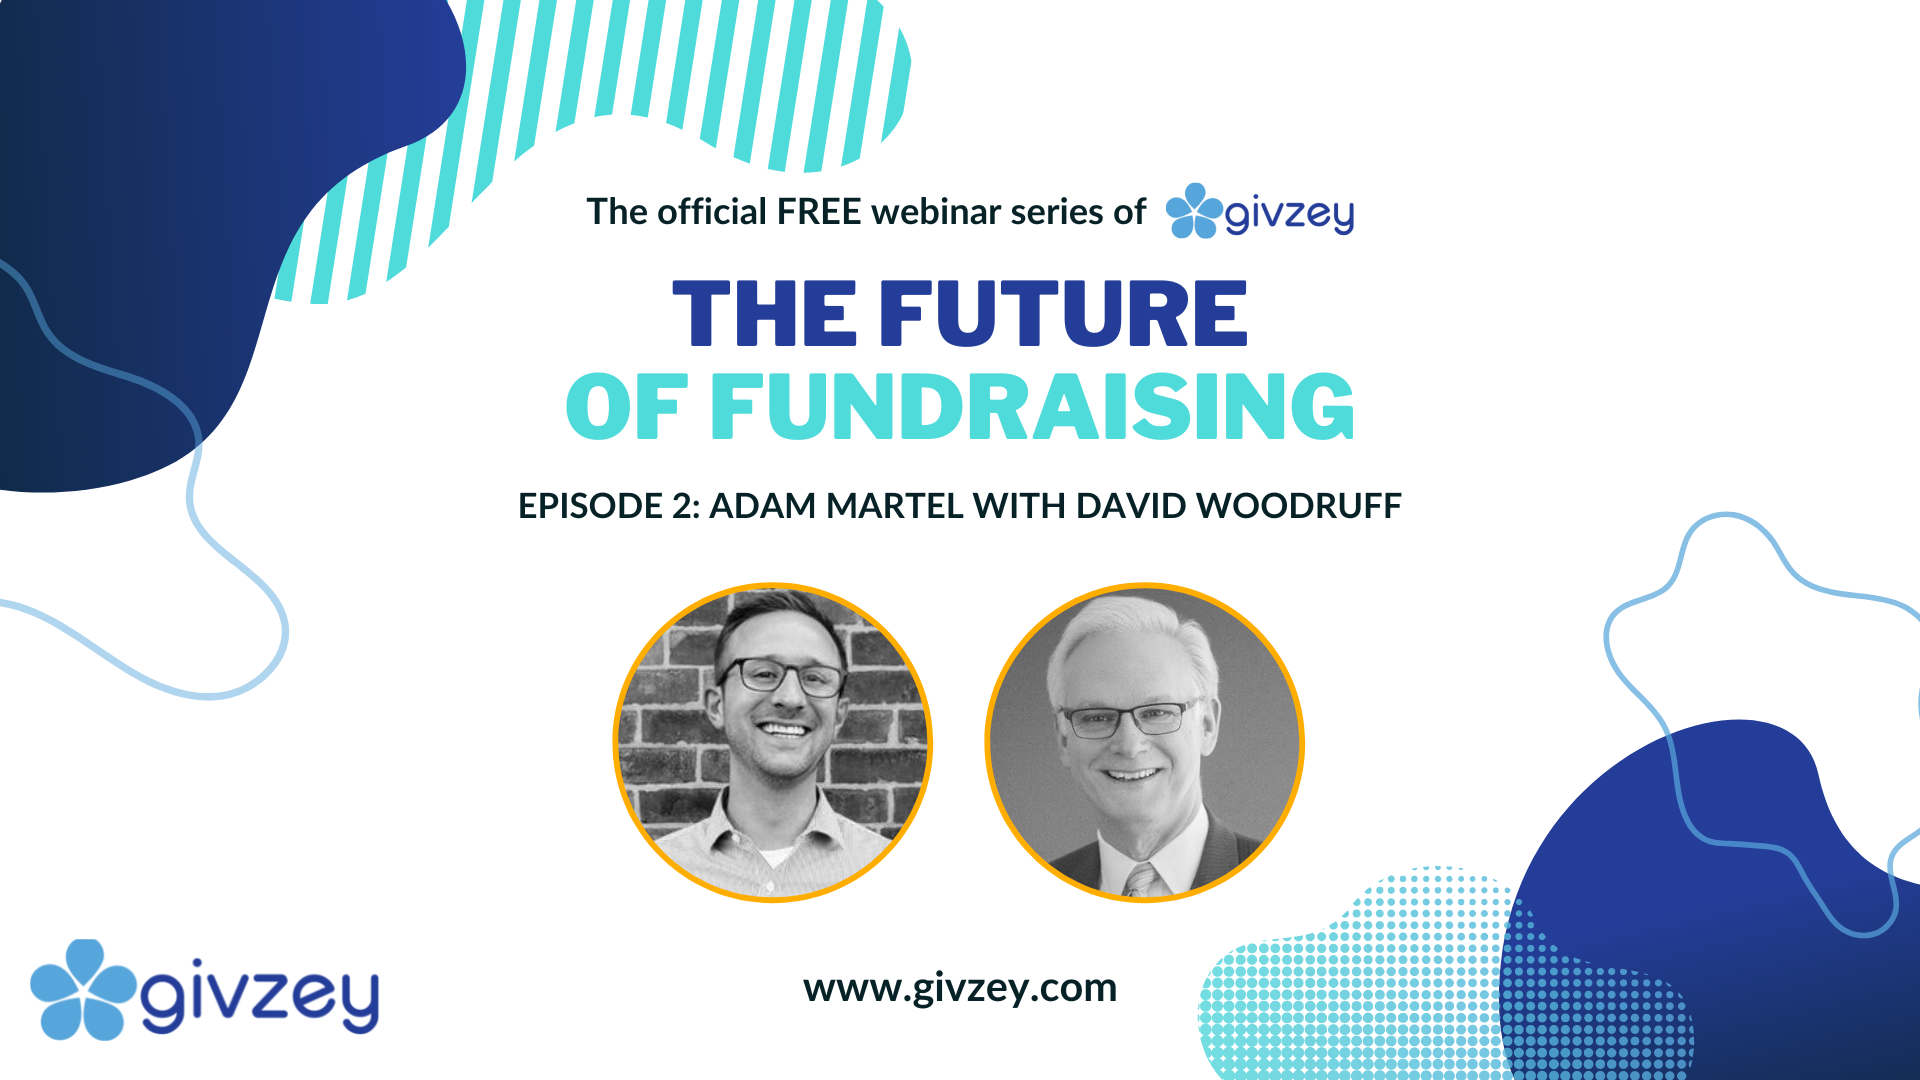 Givzey's Future of Fundraising Episode 2 - David Woodruff